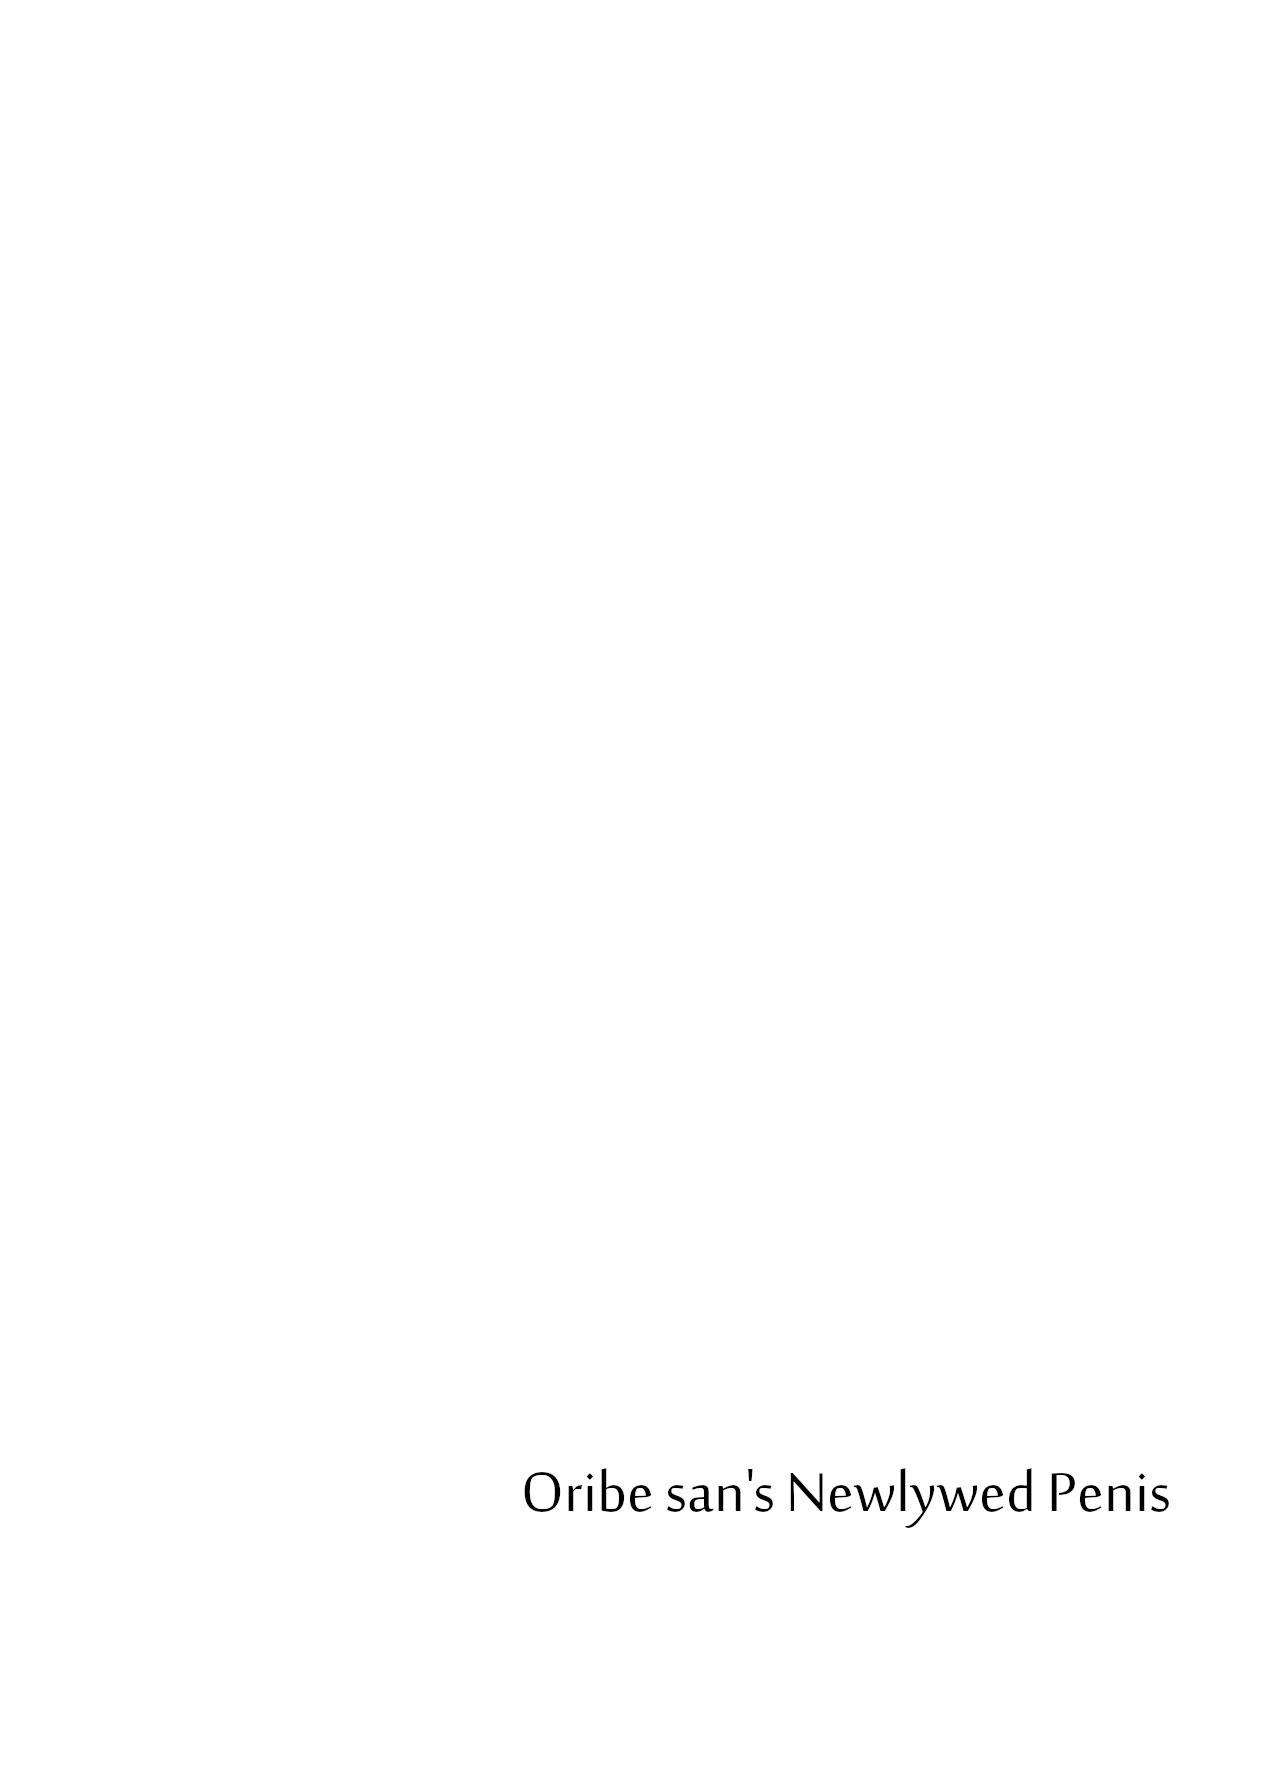 orbie san's newlywed penis 1